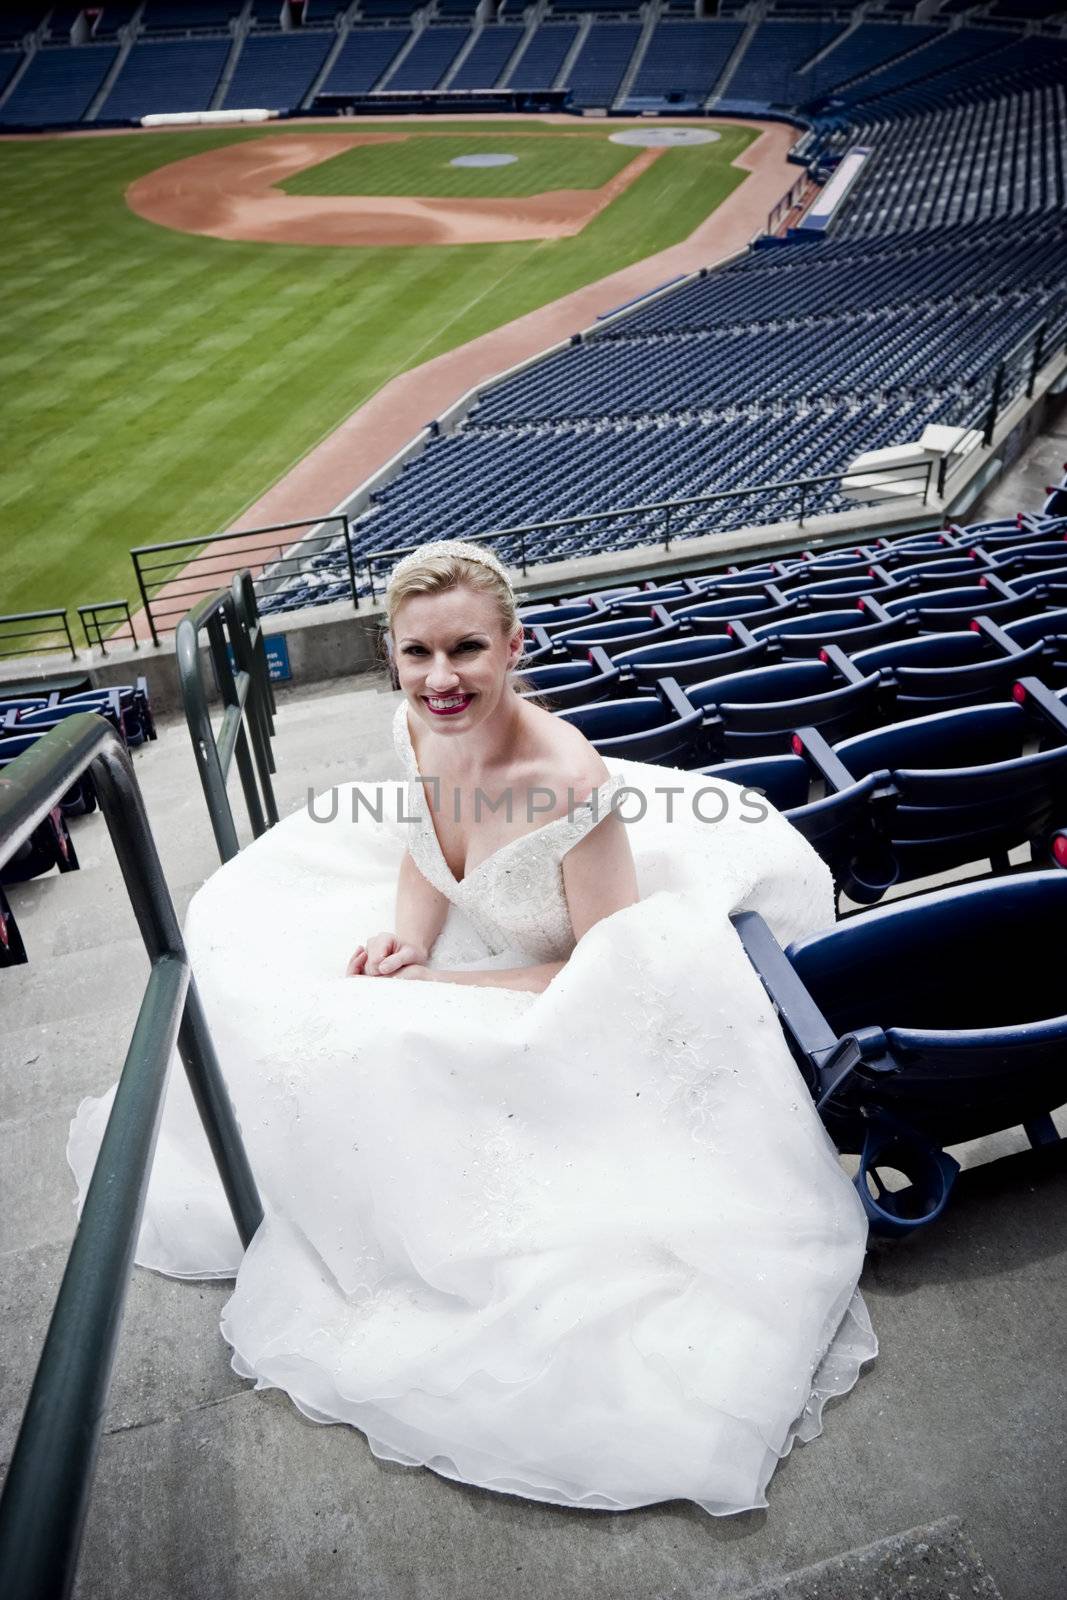 Ballpark Bride by carterphoto